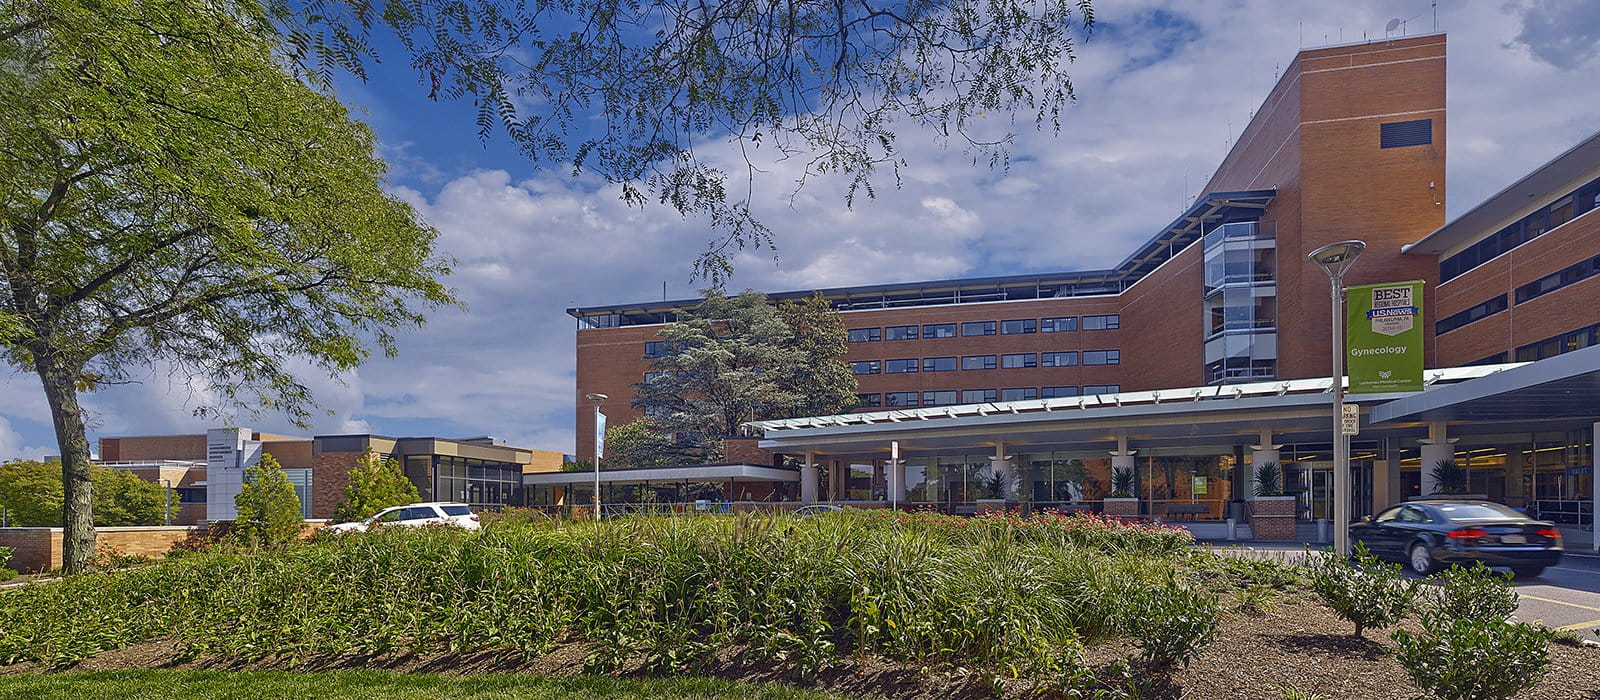 Lankenau Medical Center - Wynnewood, PA 19096 - (484)476-2000 | ShowMeLocal.com